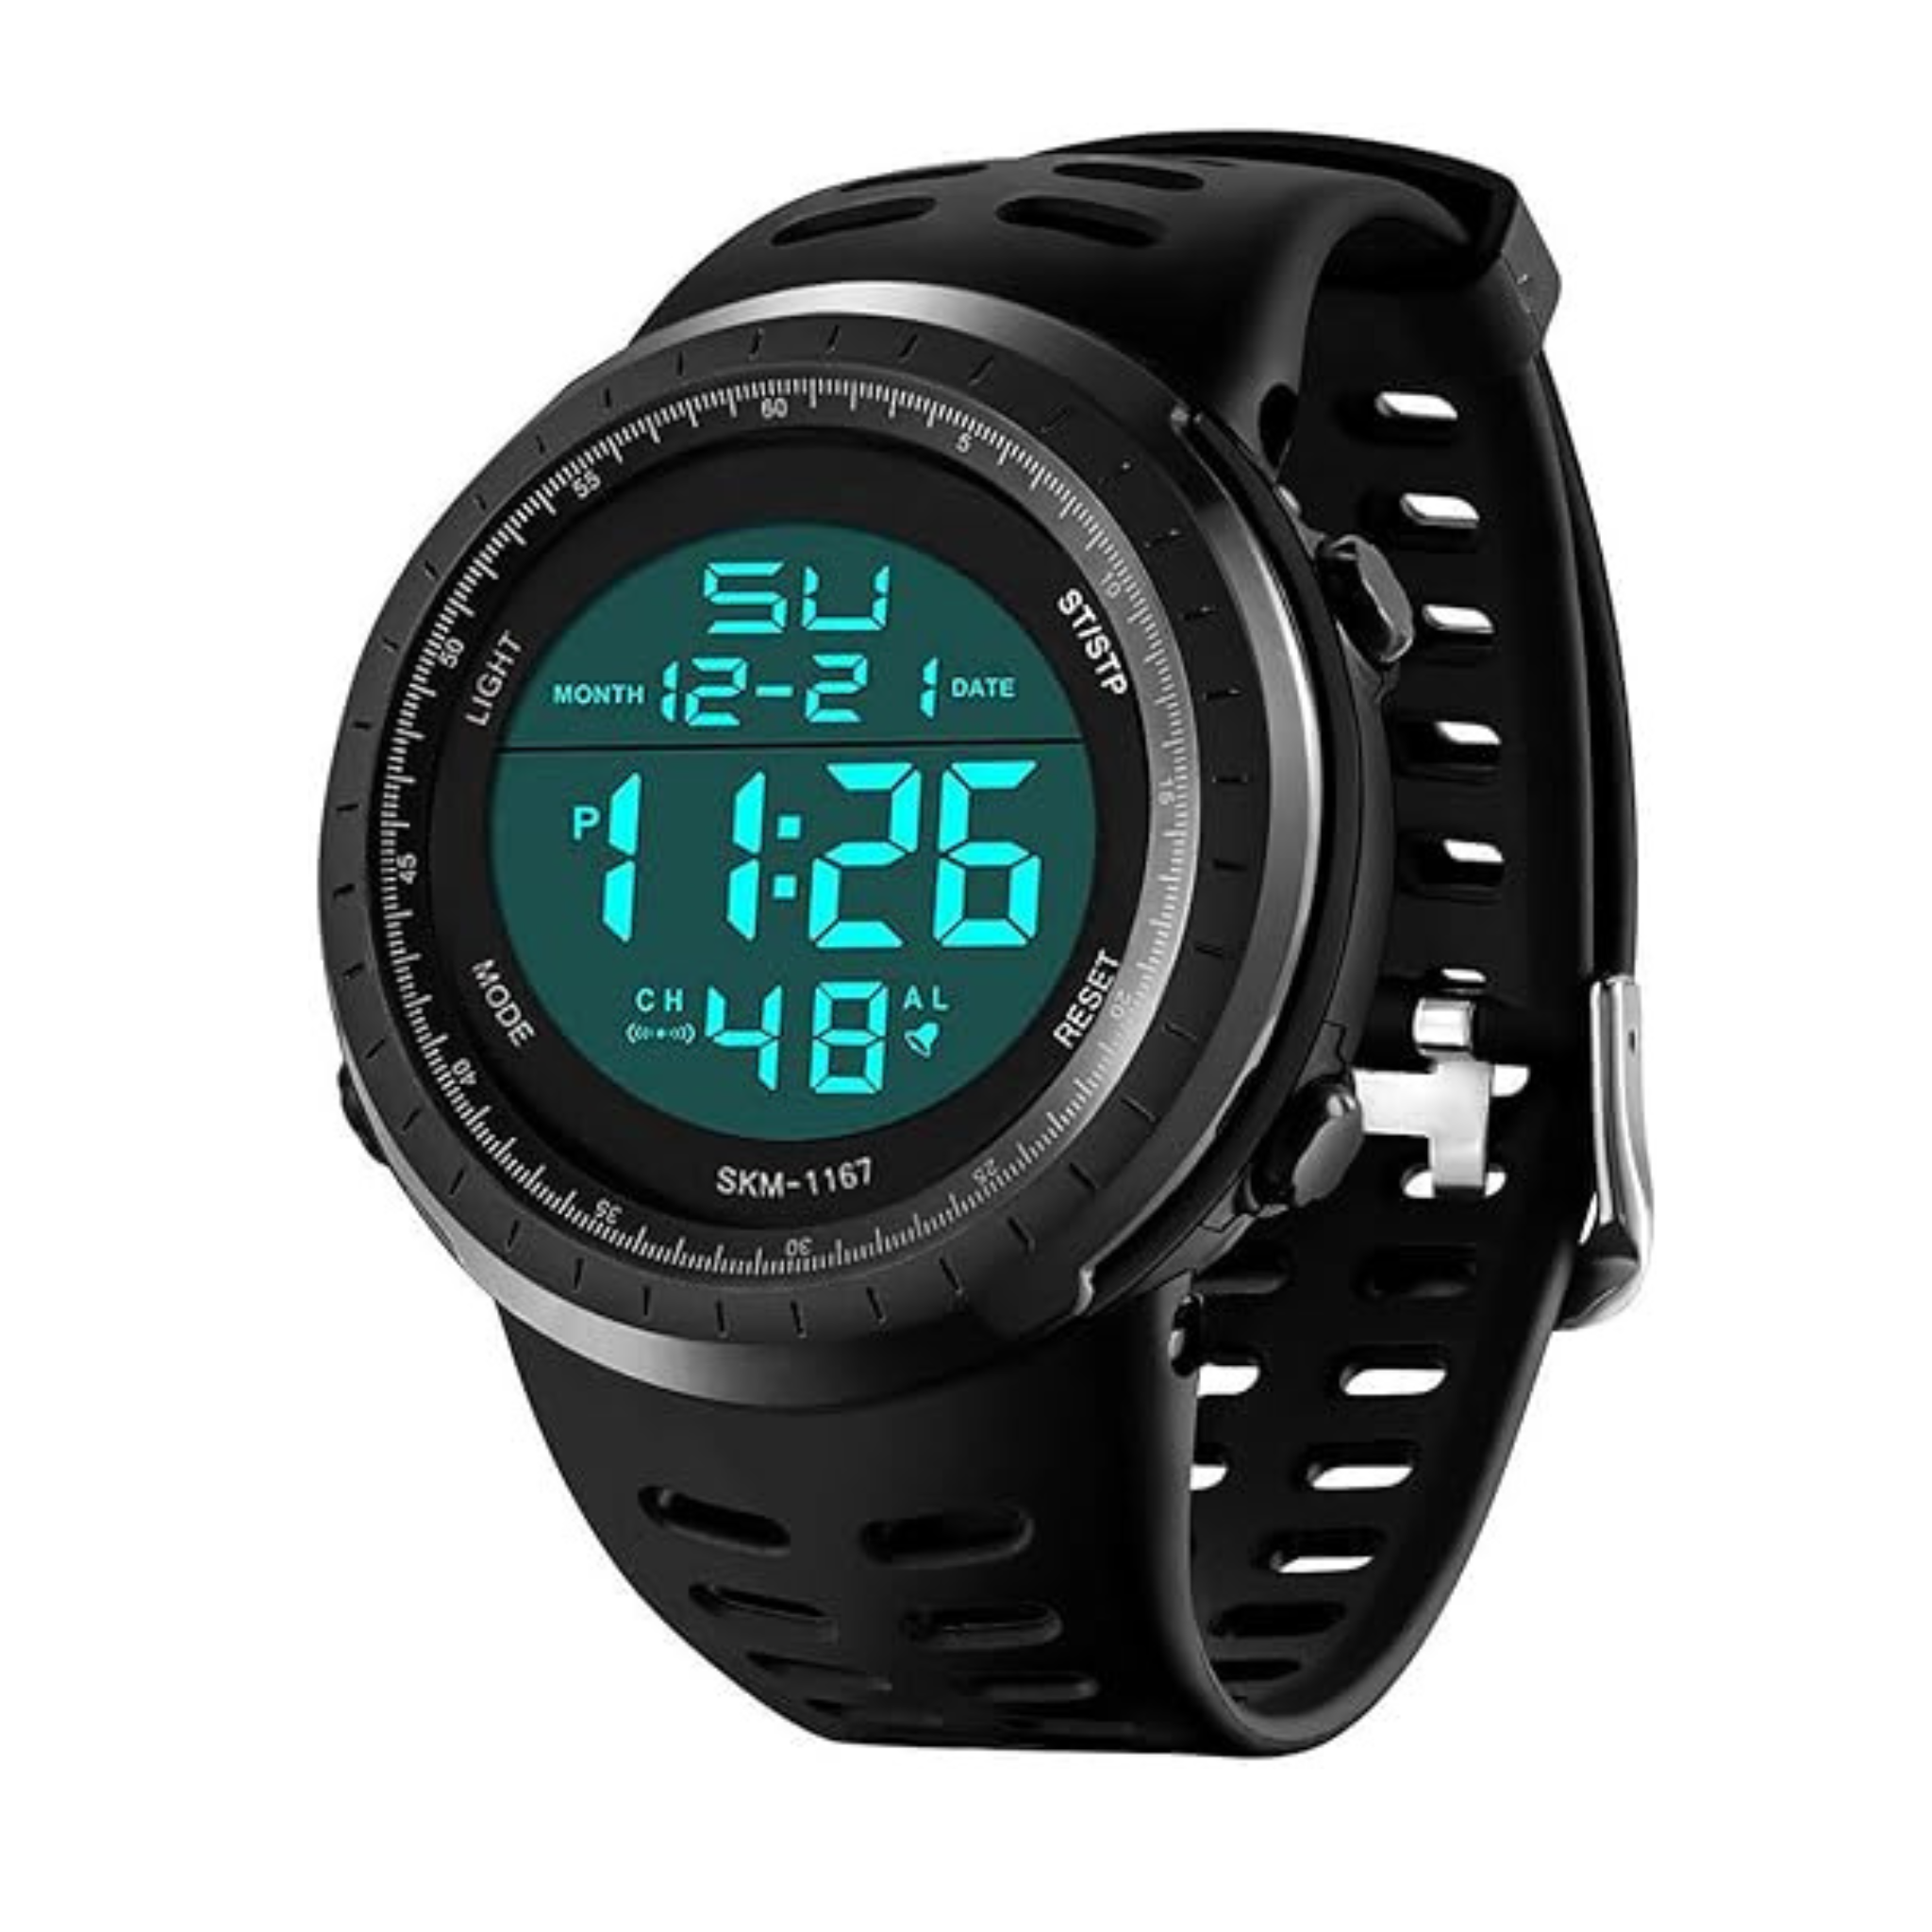 Men's Digital Waterproof Military Watch